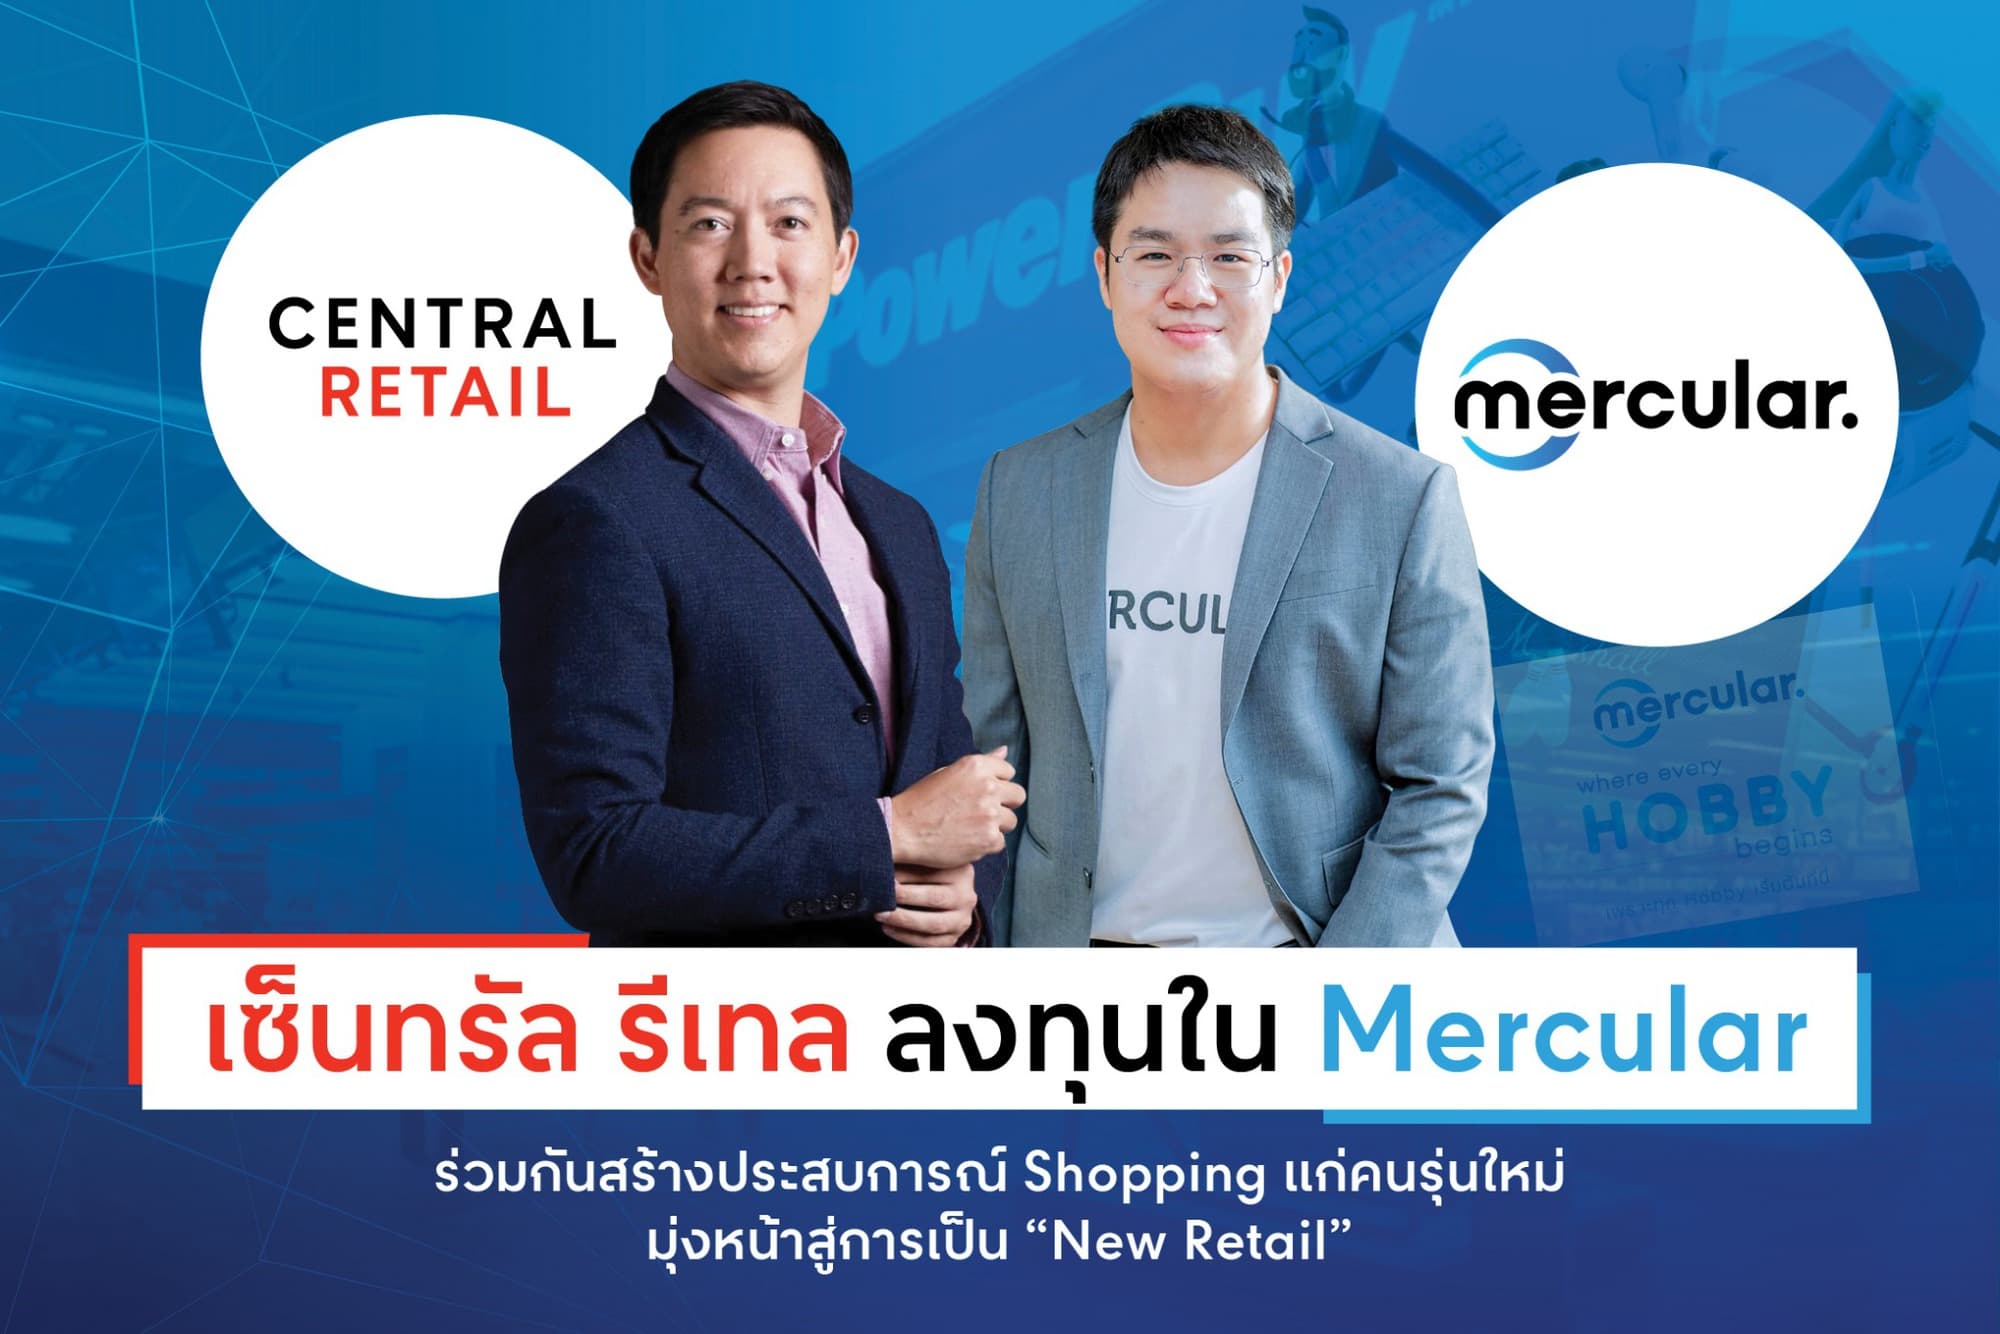 เซ็นทรัล รีเทล ลงทุนใน Mercular ร่วมกันสร้างประสบการณ์ Shopping แก่คนรุ่นใหม่ มุ่งหน้าสู่การเป็น “New Retail” 1